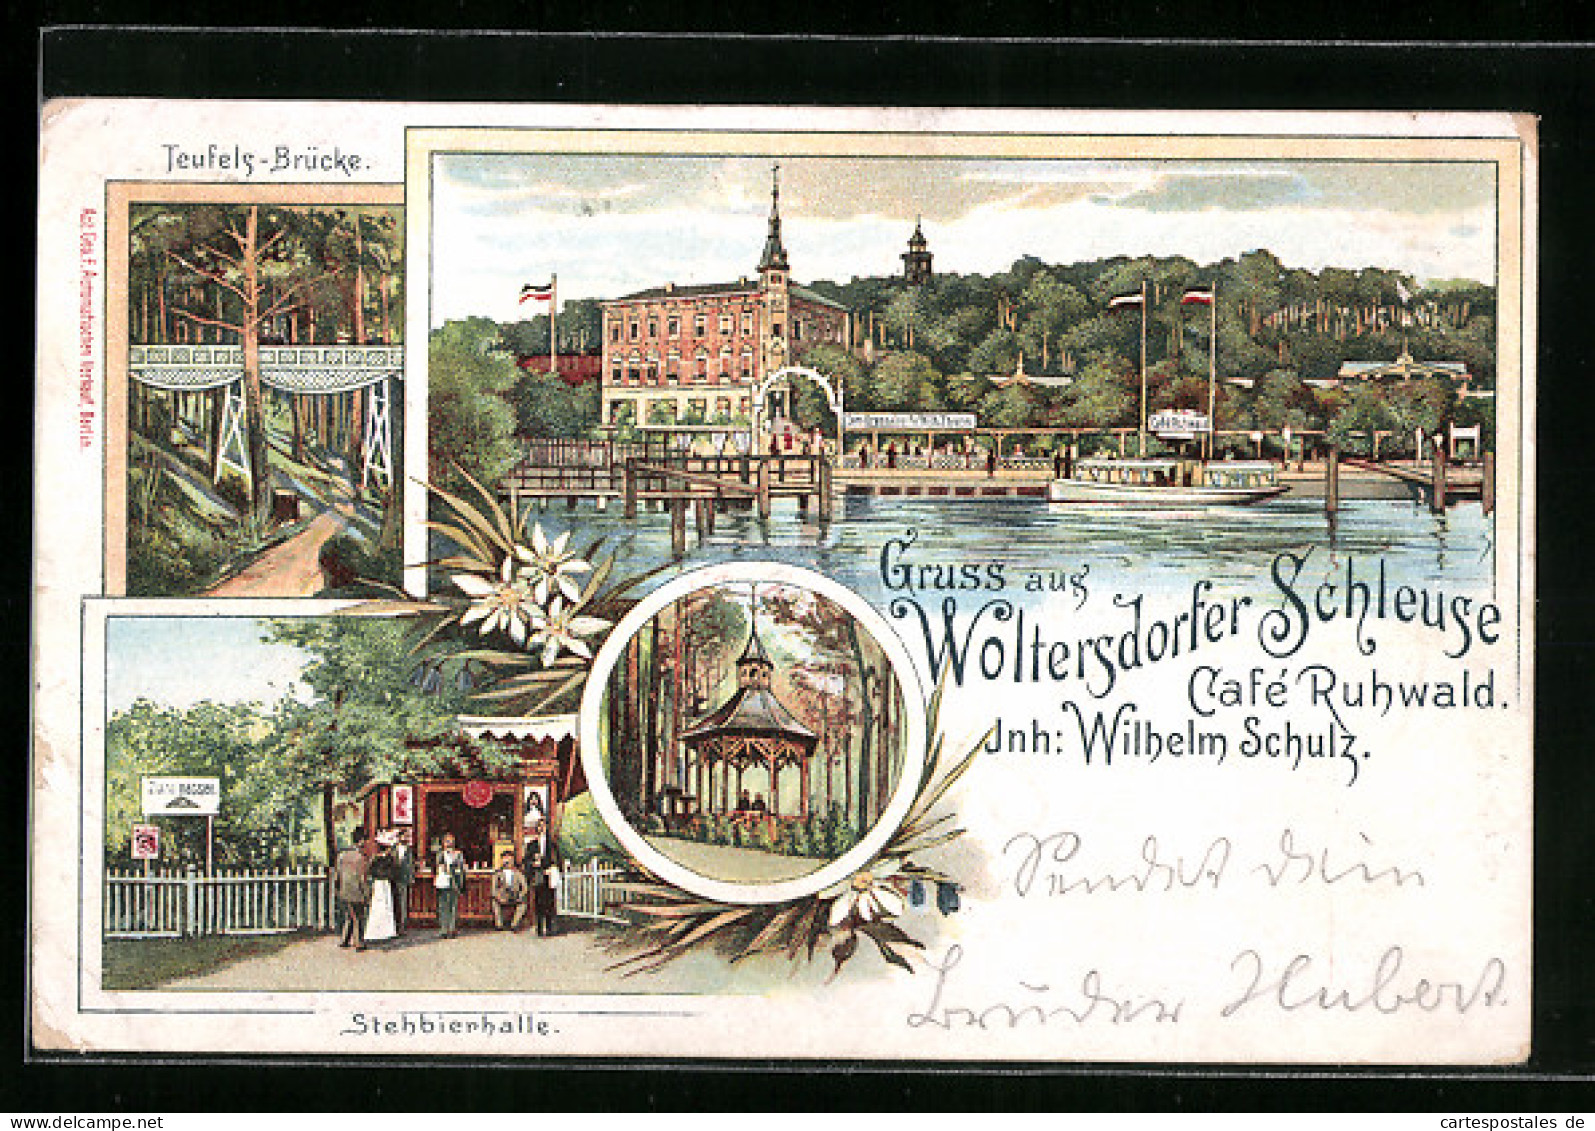 Lithographie Woltersdorf, Cafe Ruhwald An Der Woltersdorfer Schleuse, Stehbierhalle, Teufels-Brücke  - Woltersdorf